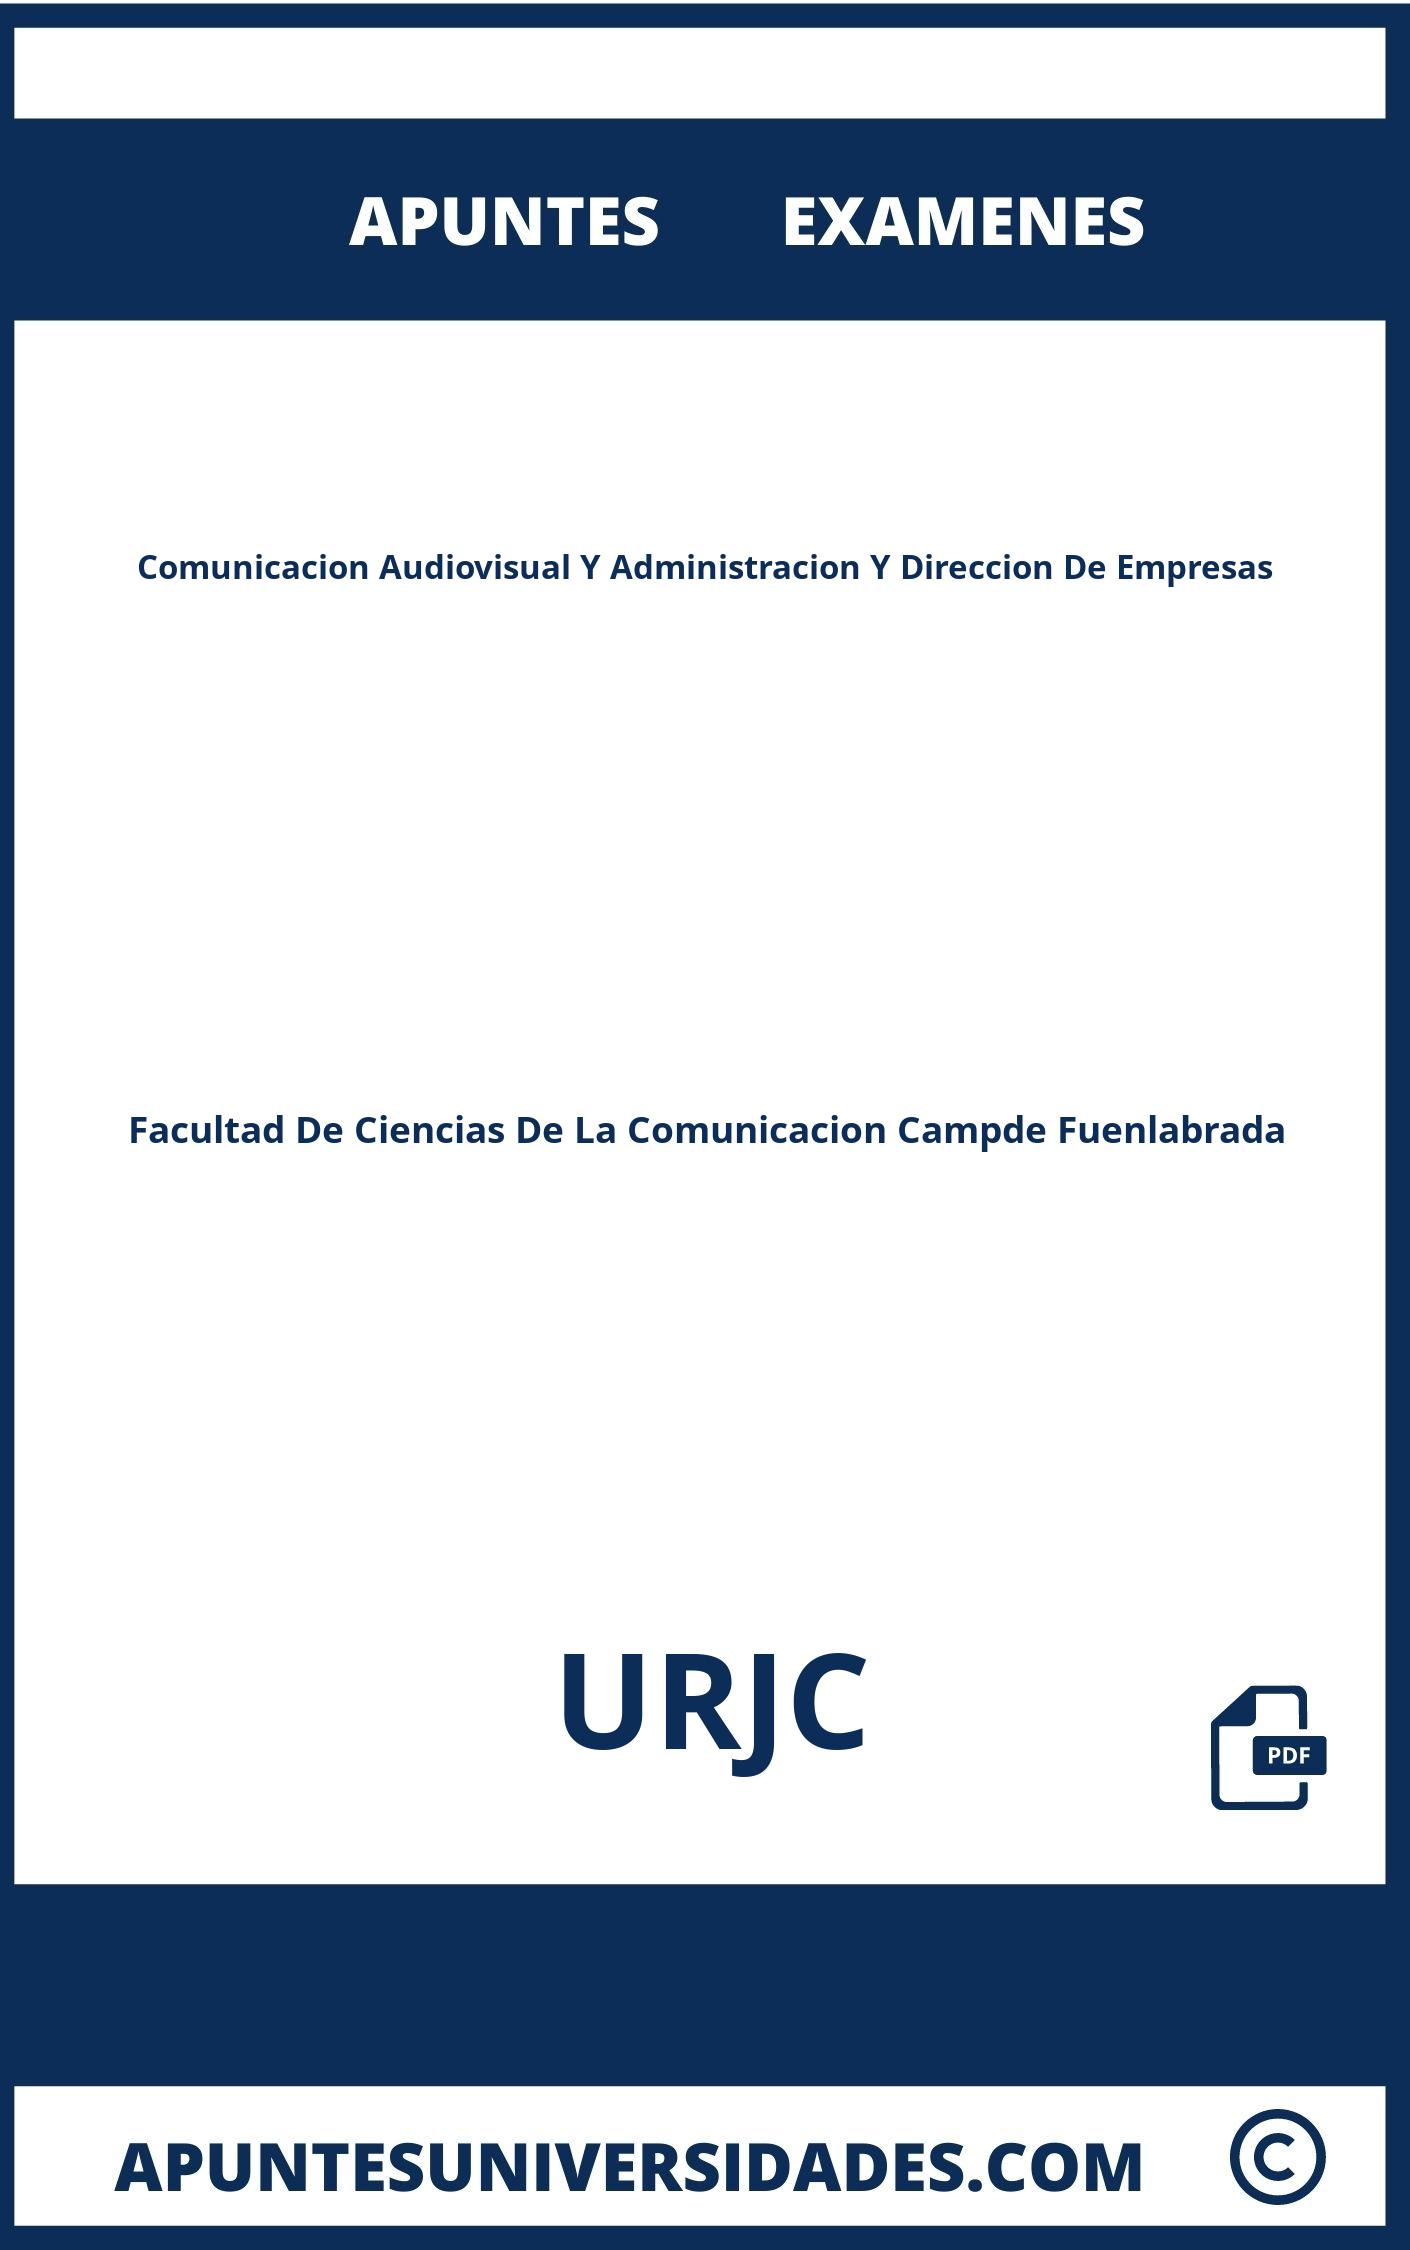 Examenes y Apuntes de Comunicacion Audiovisual Y Administracion Y Direccion De Empresas URJC